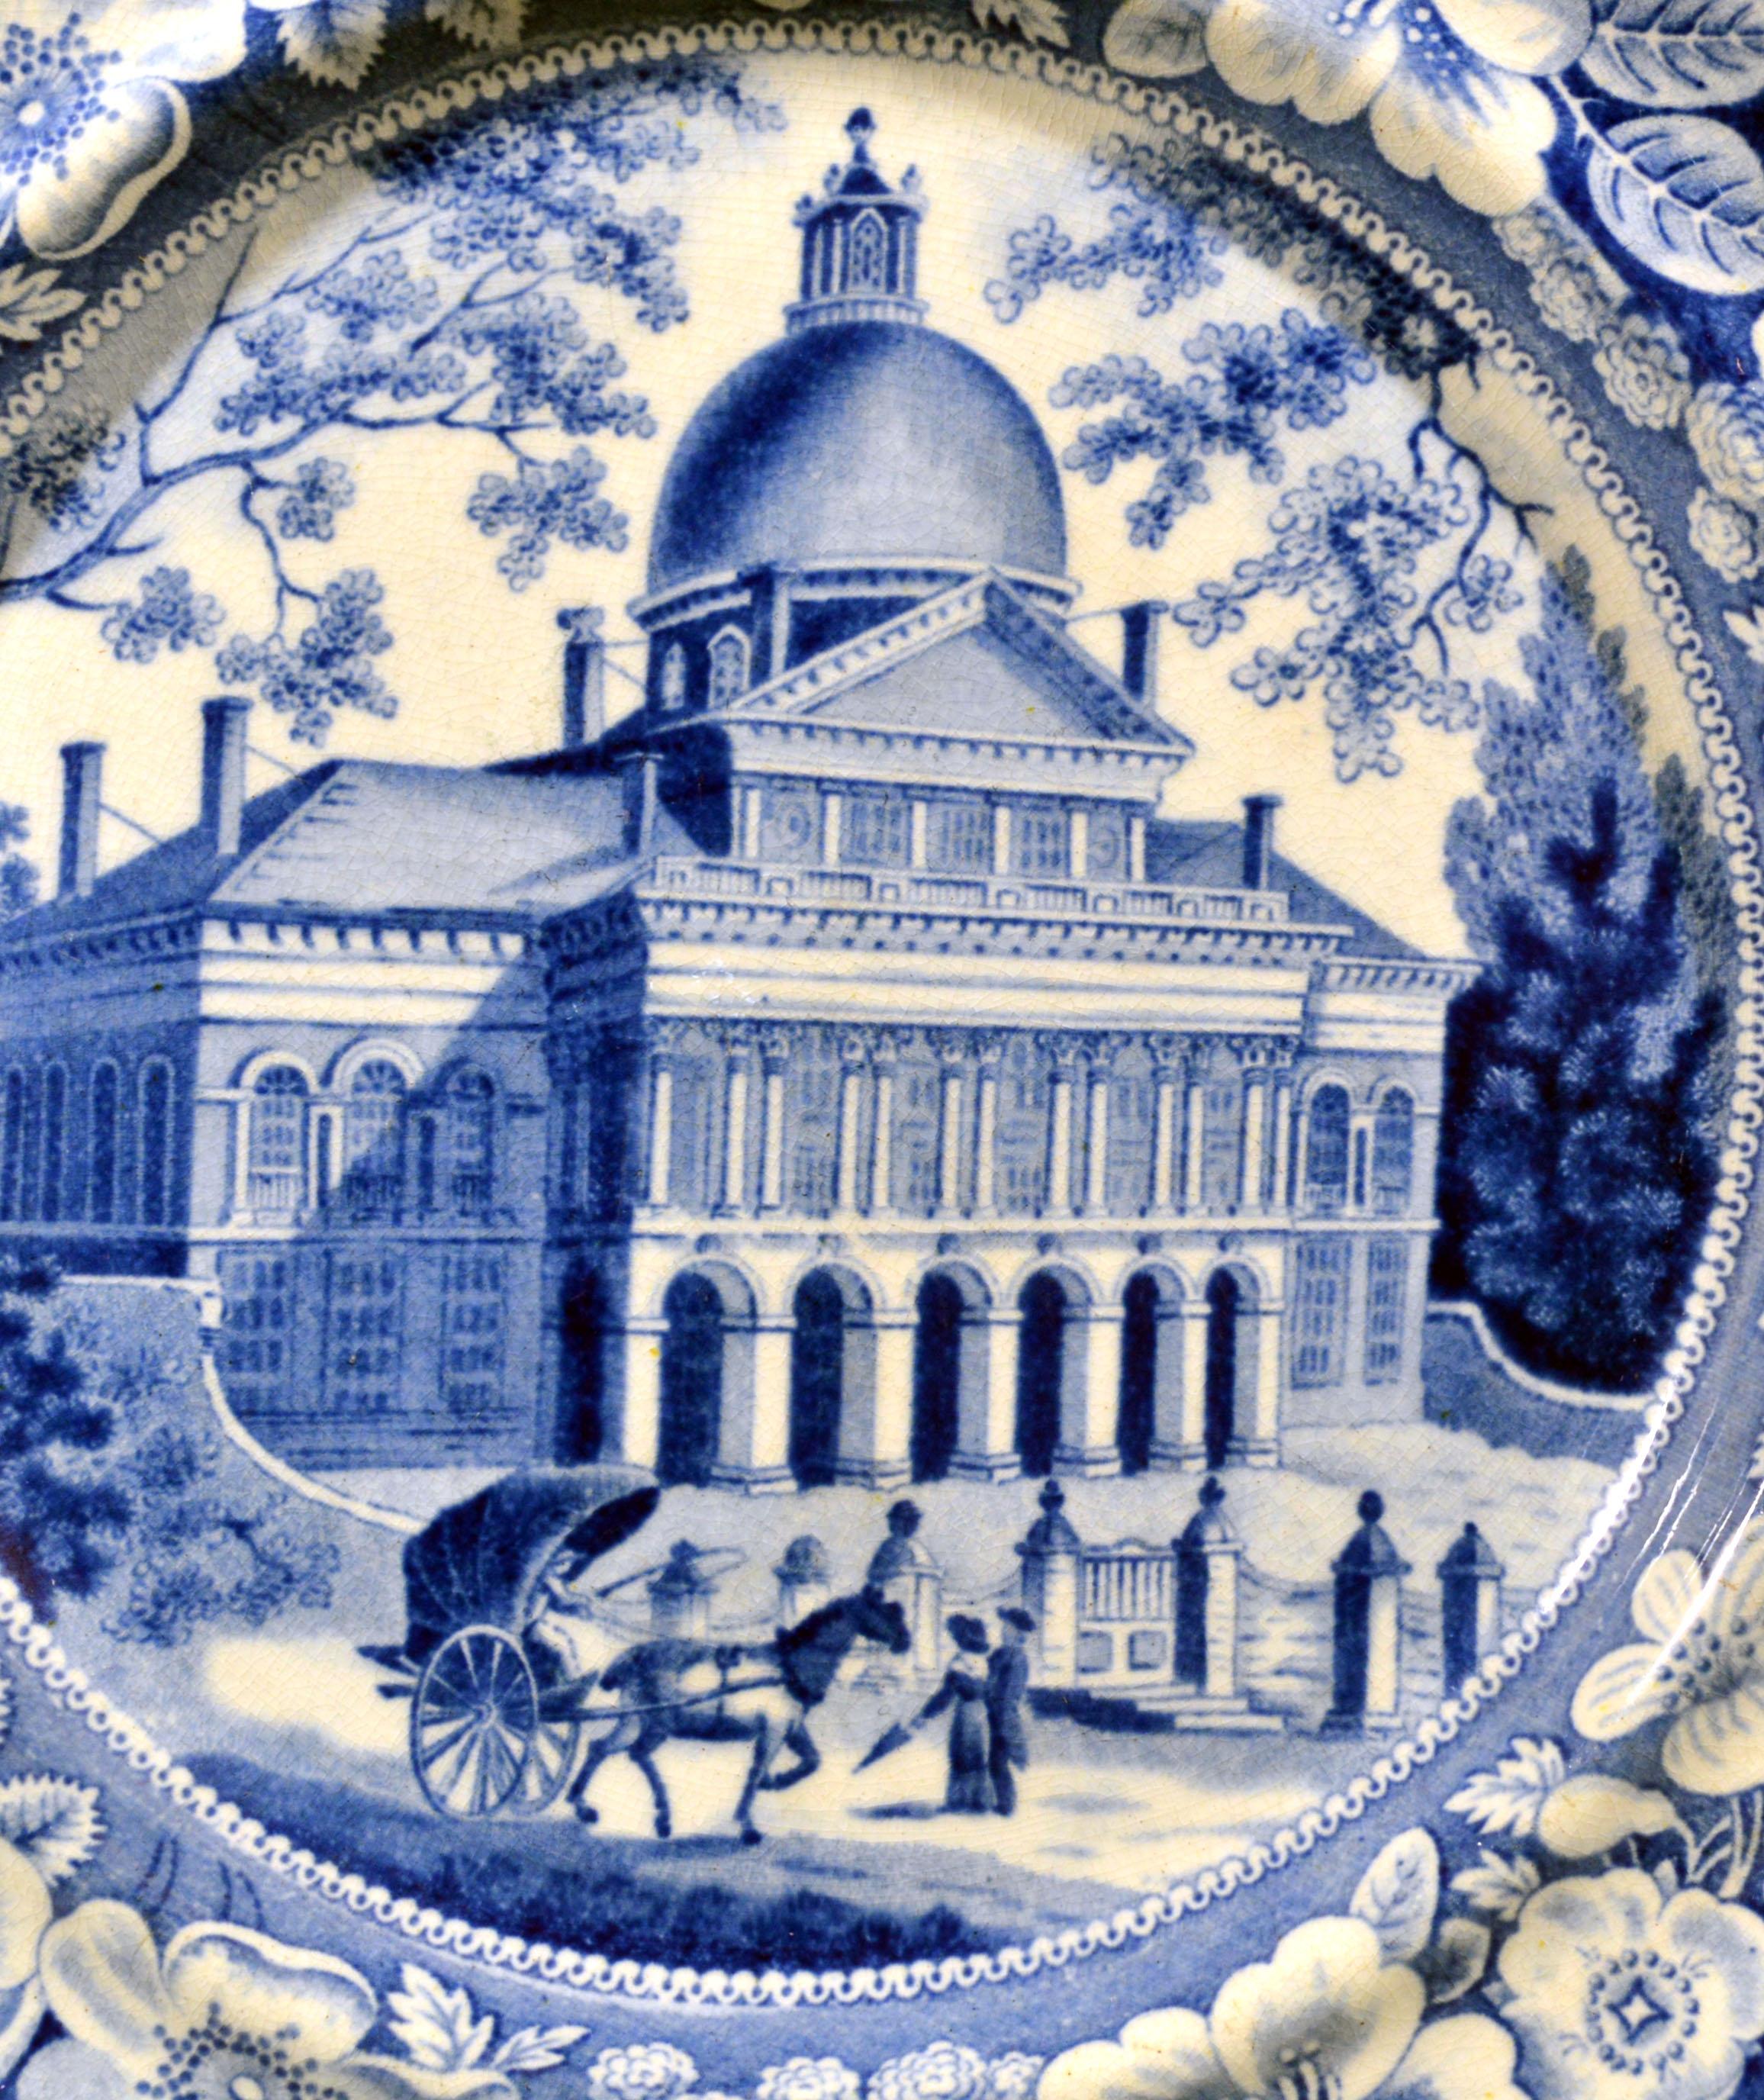 Boston State House Staffordshirepaire d'assiettes en poterie
John Rogers & Son,
1825

Cette plaque de Rogers imprimée en bleu sous glaçure de la Boston State House est le n° 01 de trois versions de la Boston State House par Rogers.
